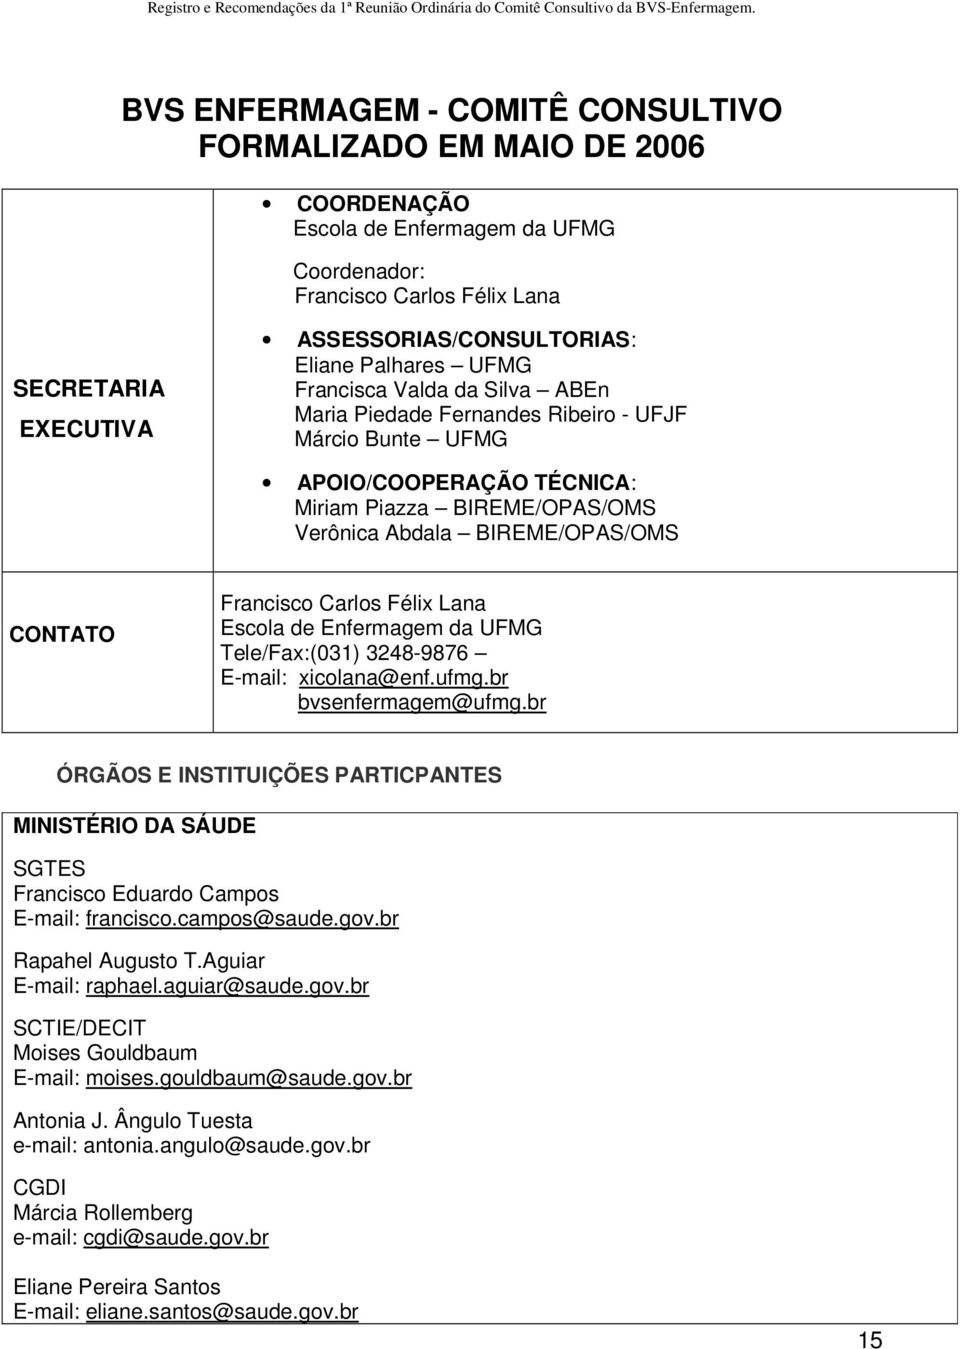 Francisco Carlos Félix Lana Escola de Enfermagem da UFMG Tele/Fax:(031) 3248-9876 E-mail: xicolana@enf.ufmg.br bvsenfermagem@ufmg.